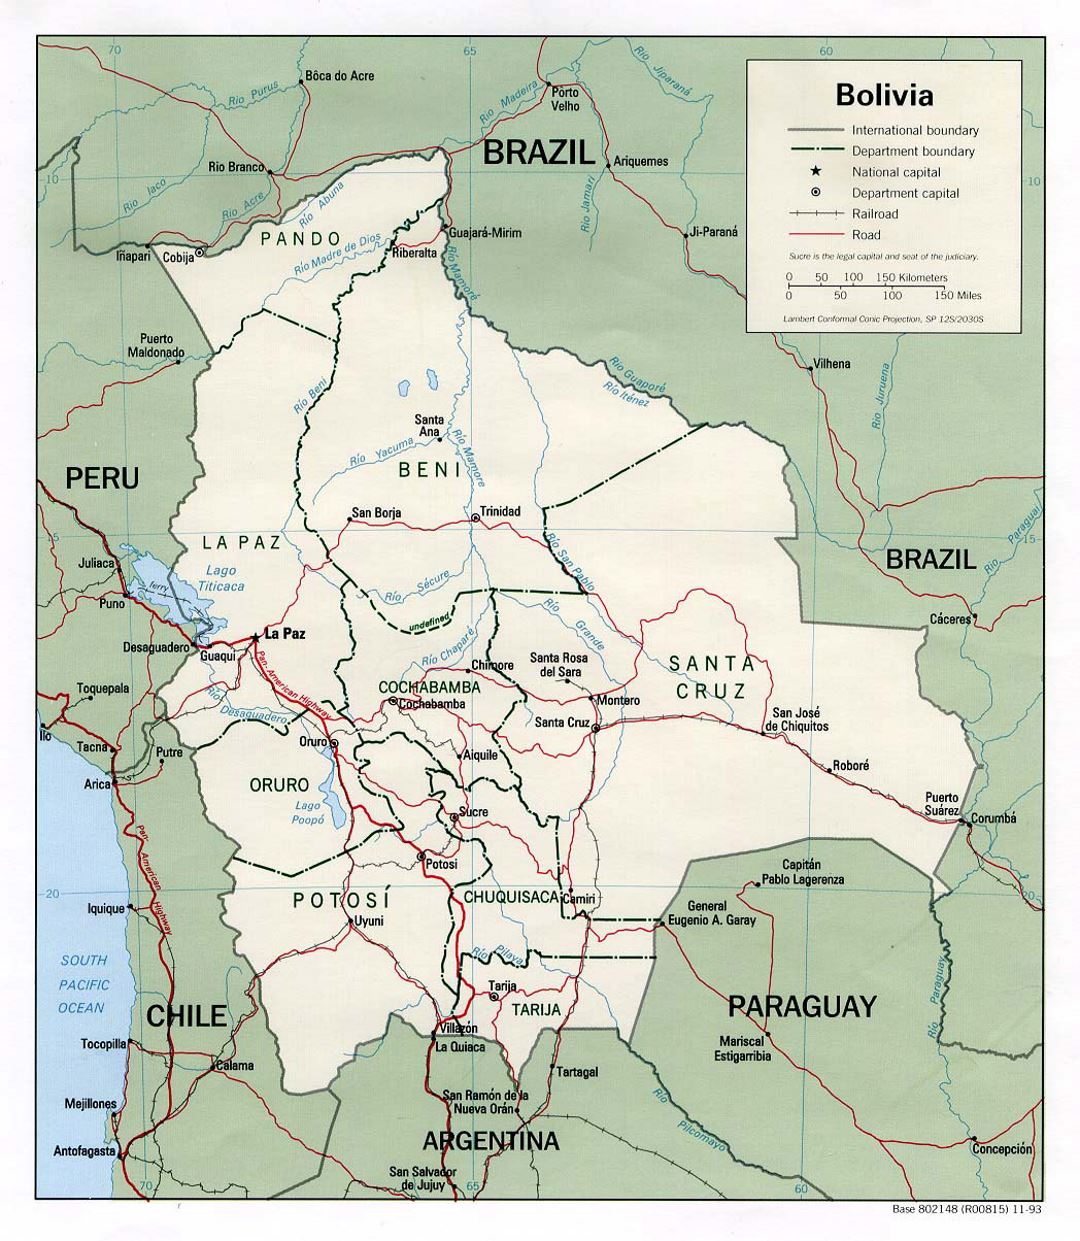 Detallado mapa político y administrativo de Bolivia con carreteras y principales ciudades - 1993